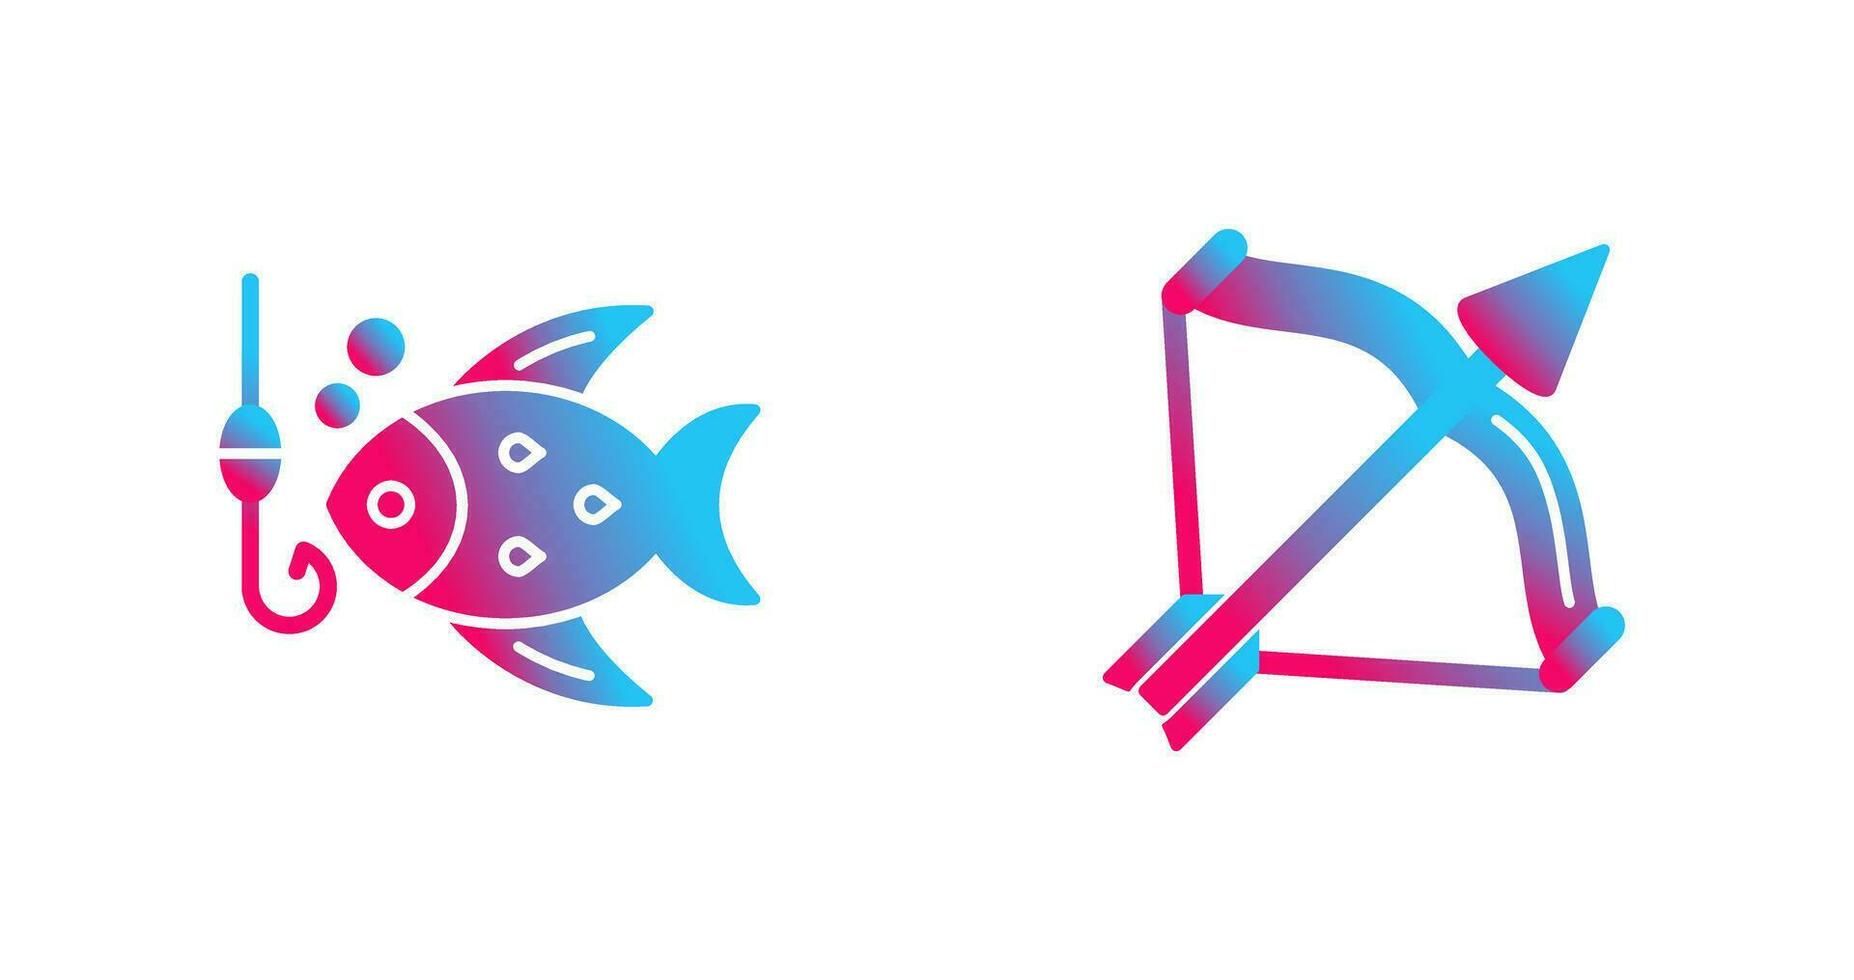 rosett och fiske ikon vektor